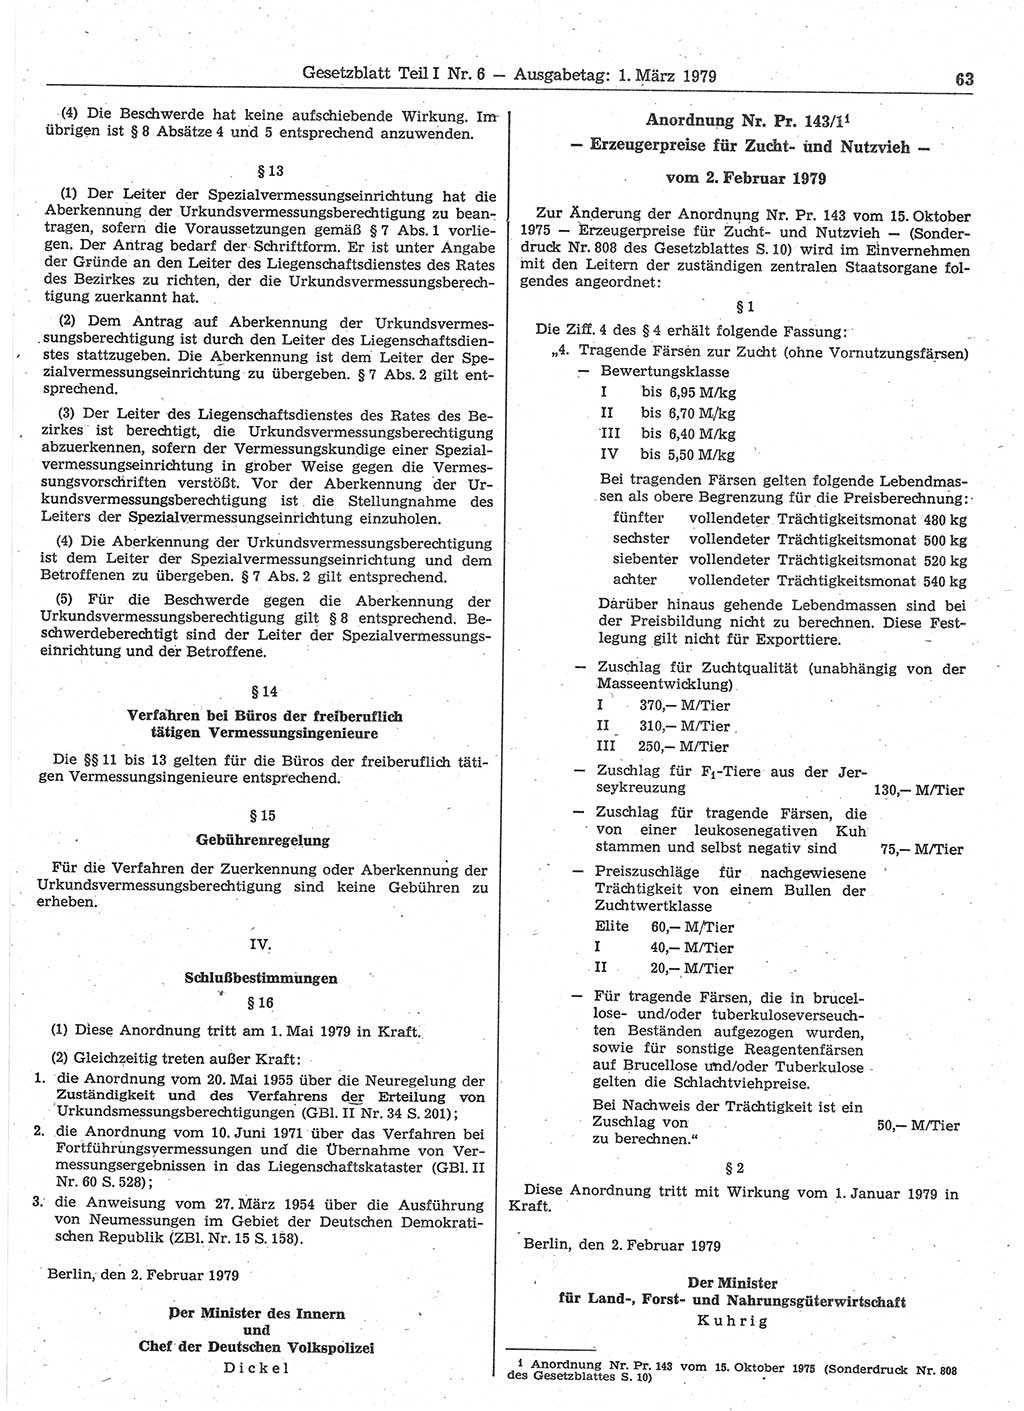 Gesetzblatt (GBl.) der Deutschen Demokratischen Republik (DDR) Teil Ⅰ 1979, Seite 63 (GBl. DDR Ⅰ 1979, S. 63)